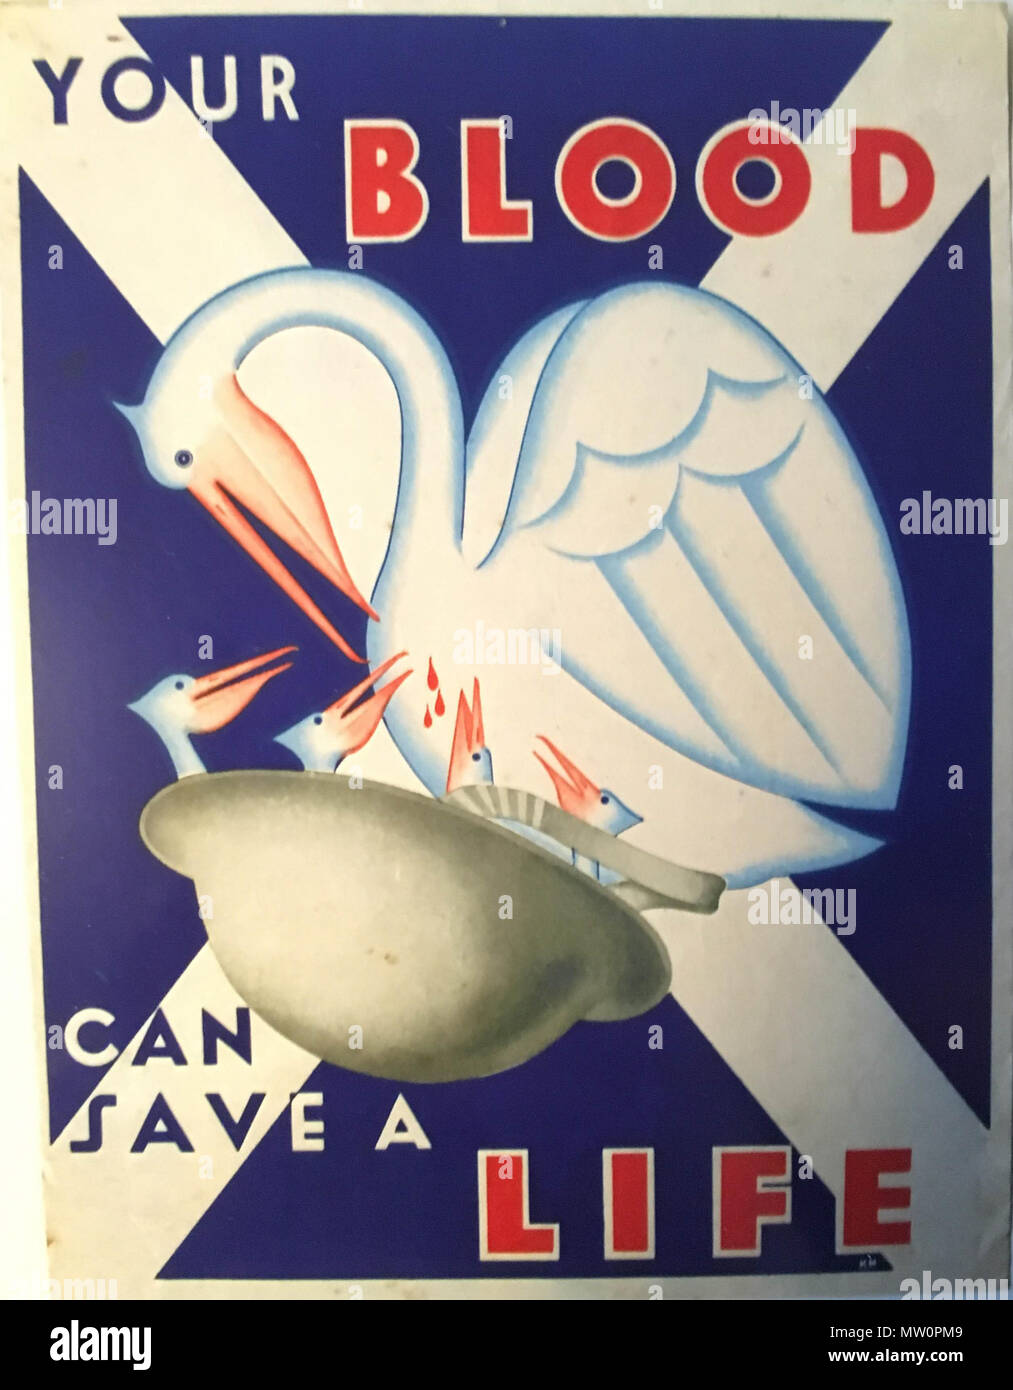 . Englisch: 1944 Rekrutierung Plakat von K.M. Münnich. 1. Mai 1944.  Krzysztof M. Münnich 435 Poster der Schottischen Nationalen Bluttransfusion  Association Stockfotografie - Alamy